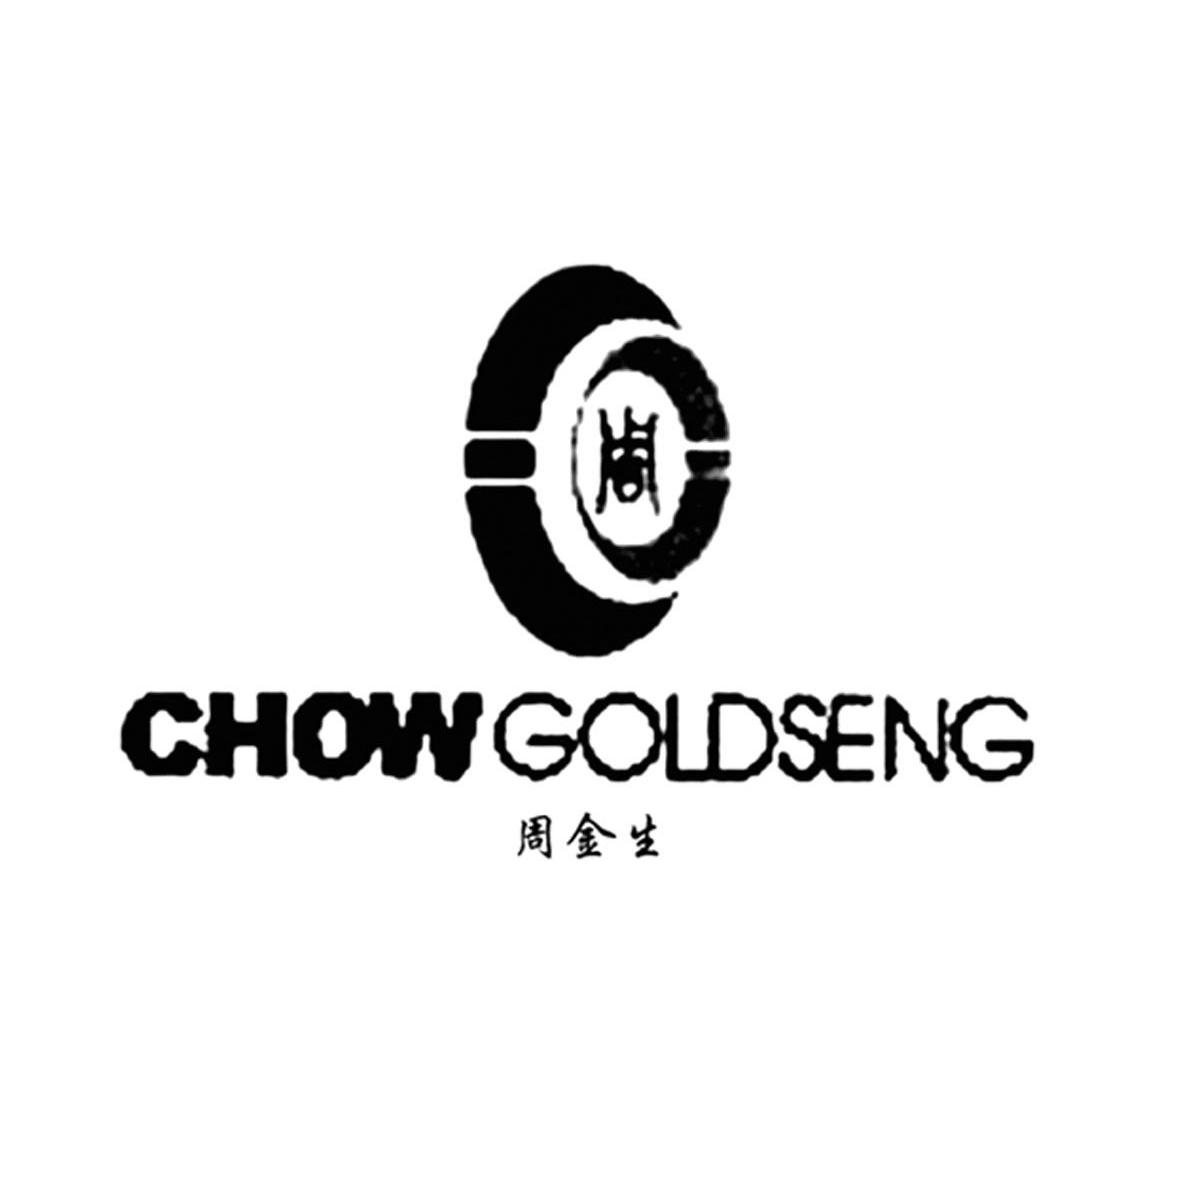 周金生logo图片